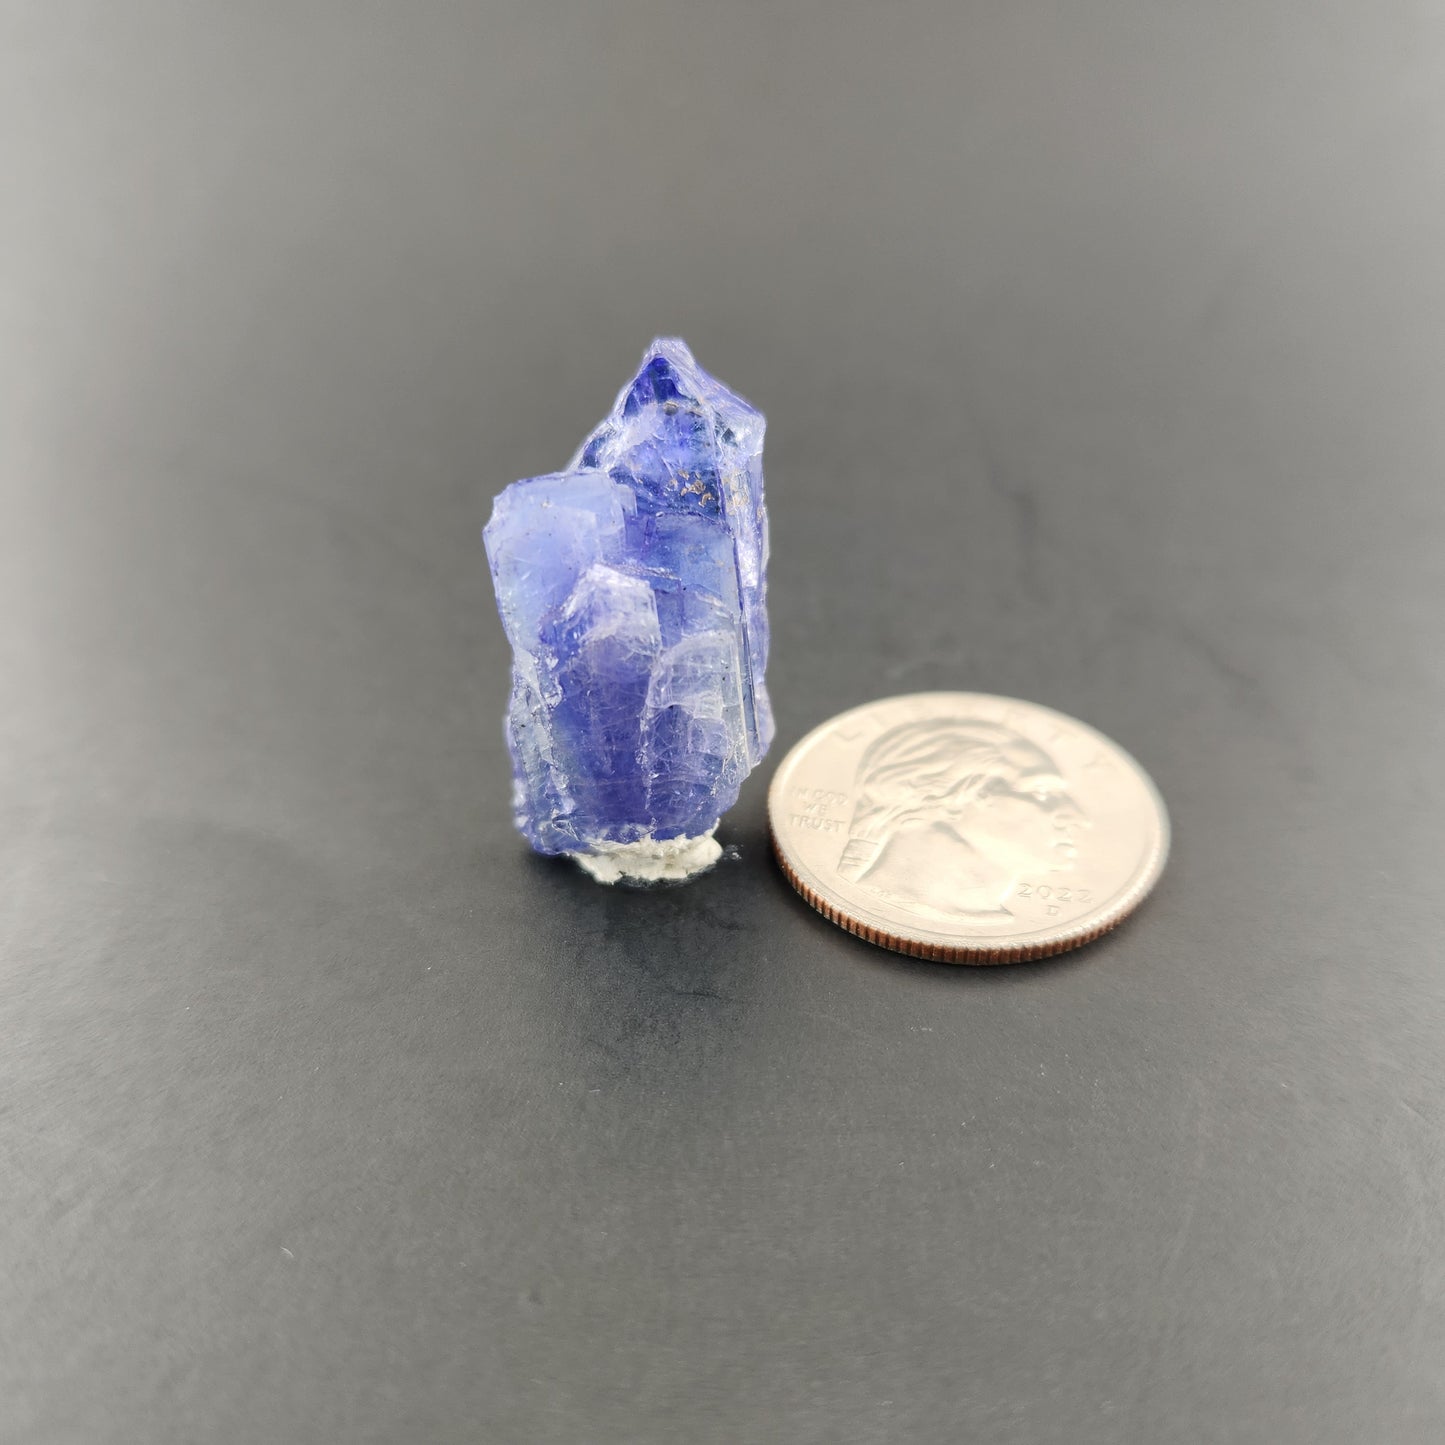 Natural Tanzanite Crystal from Tanzania